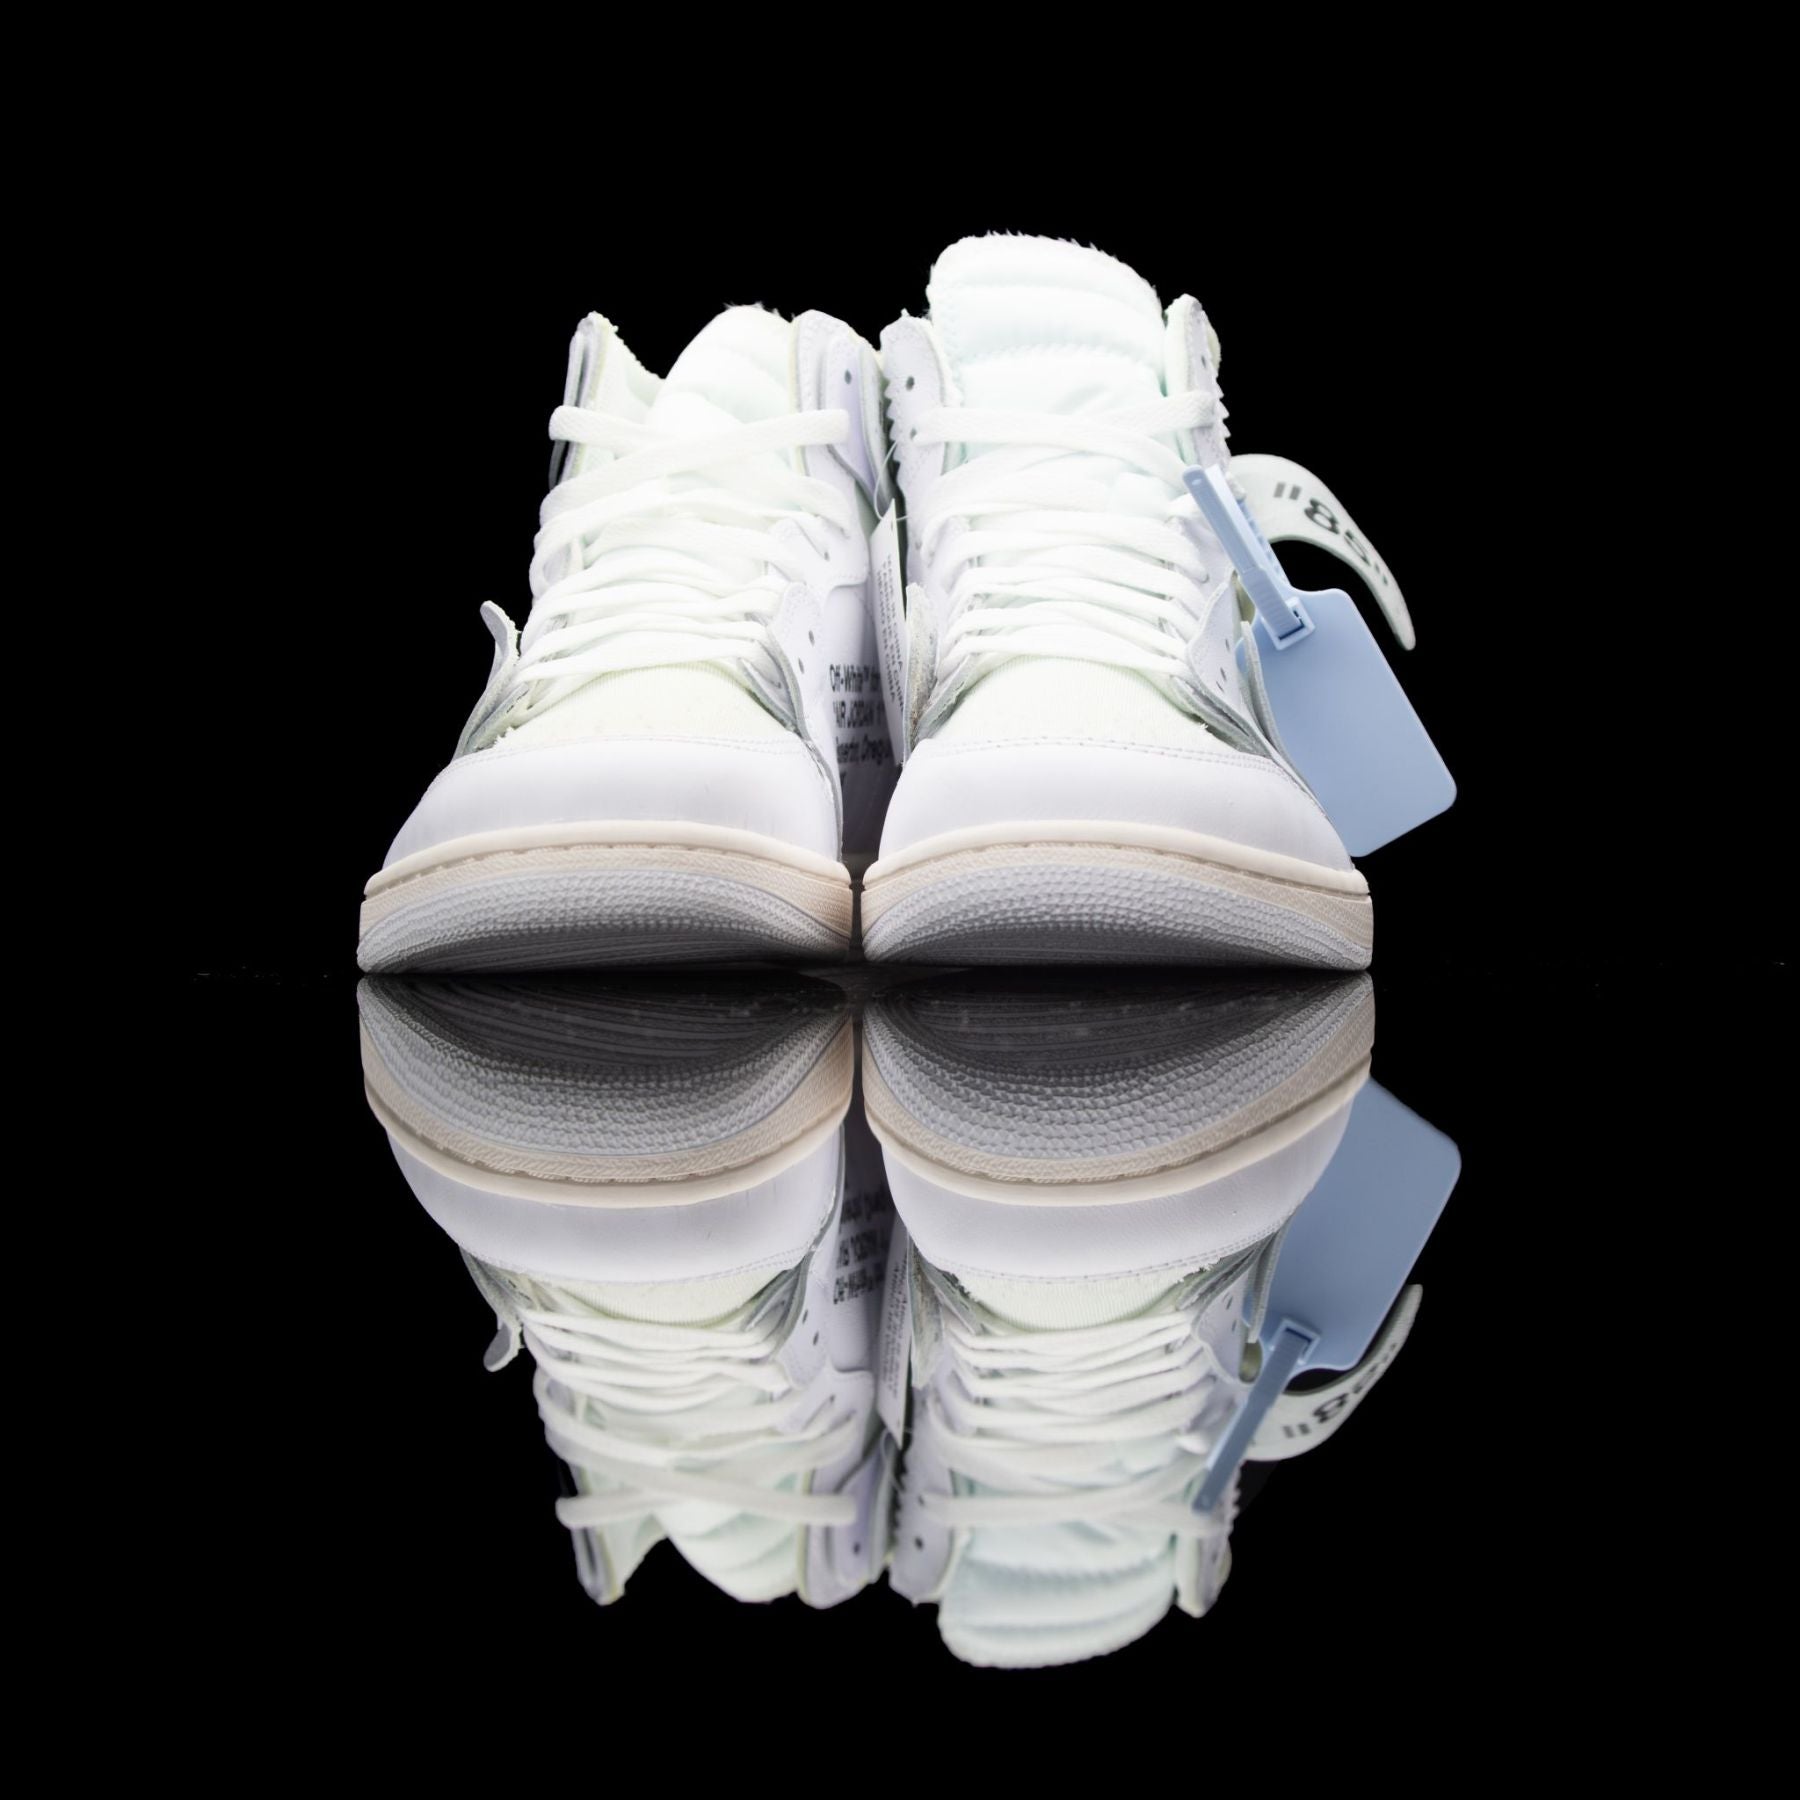 Jordan X Off-White Air Jordan 1 Euro Release Sneakers for Men